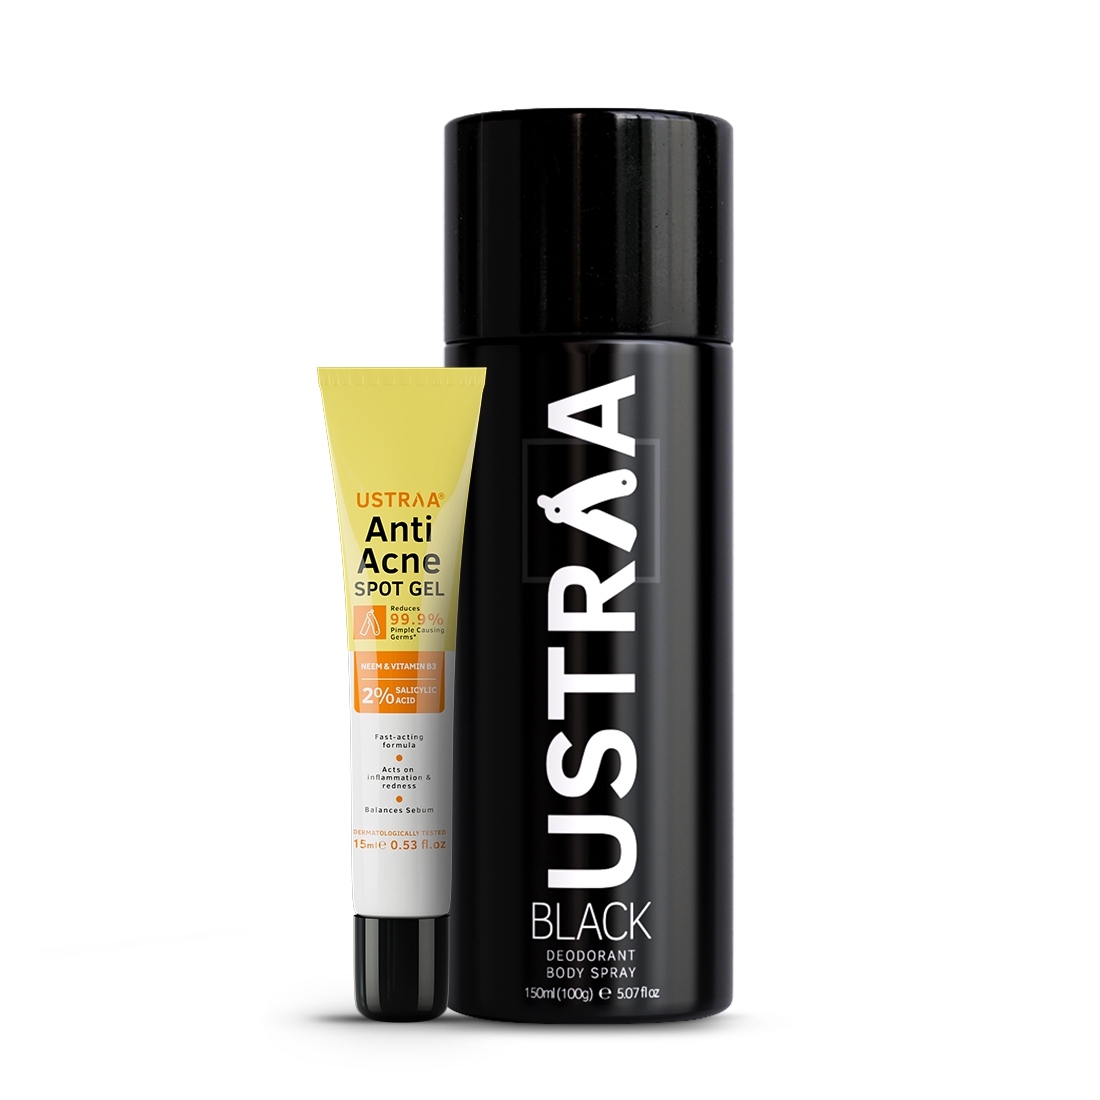 Ustraa | Ustraa Anti Acne Spot Gel - 15ml & BLACK Deodorant Body Spray - 150ml